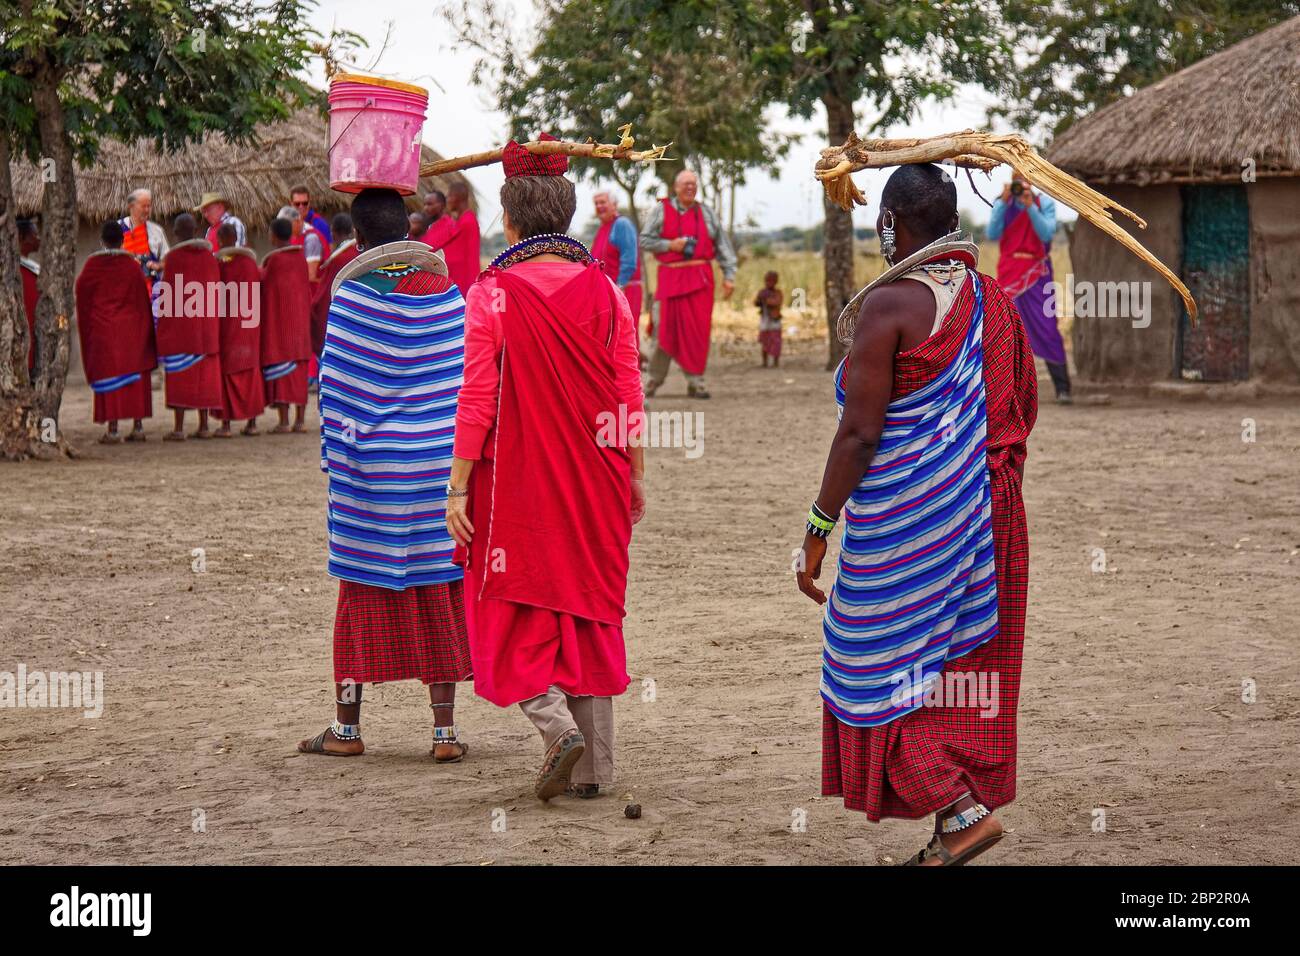 Aldea Maasai; 3 mujeres llevando objetos en la cabeza, 2 Massai, 1 visitante, nativos; vestido tradicional, aprendizaje, educación, compartir cultura, volver vi Foto de stock